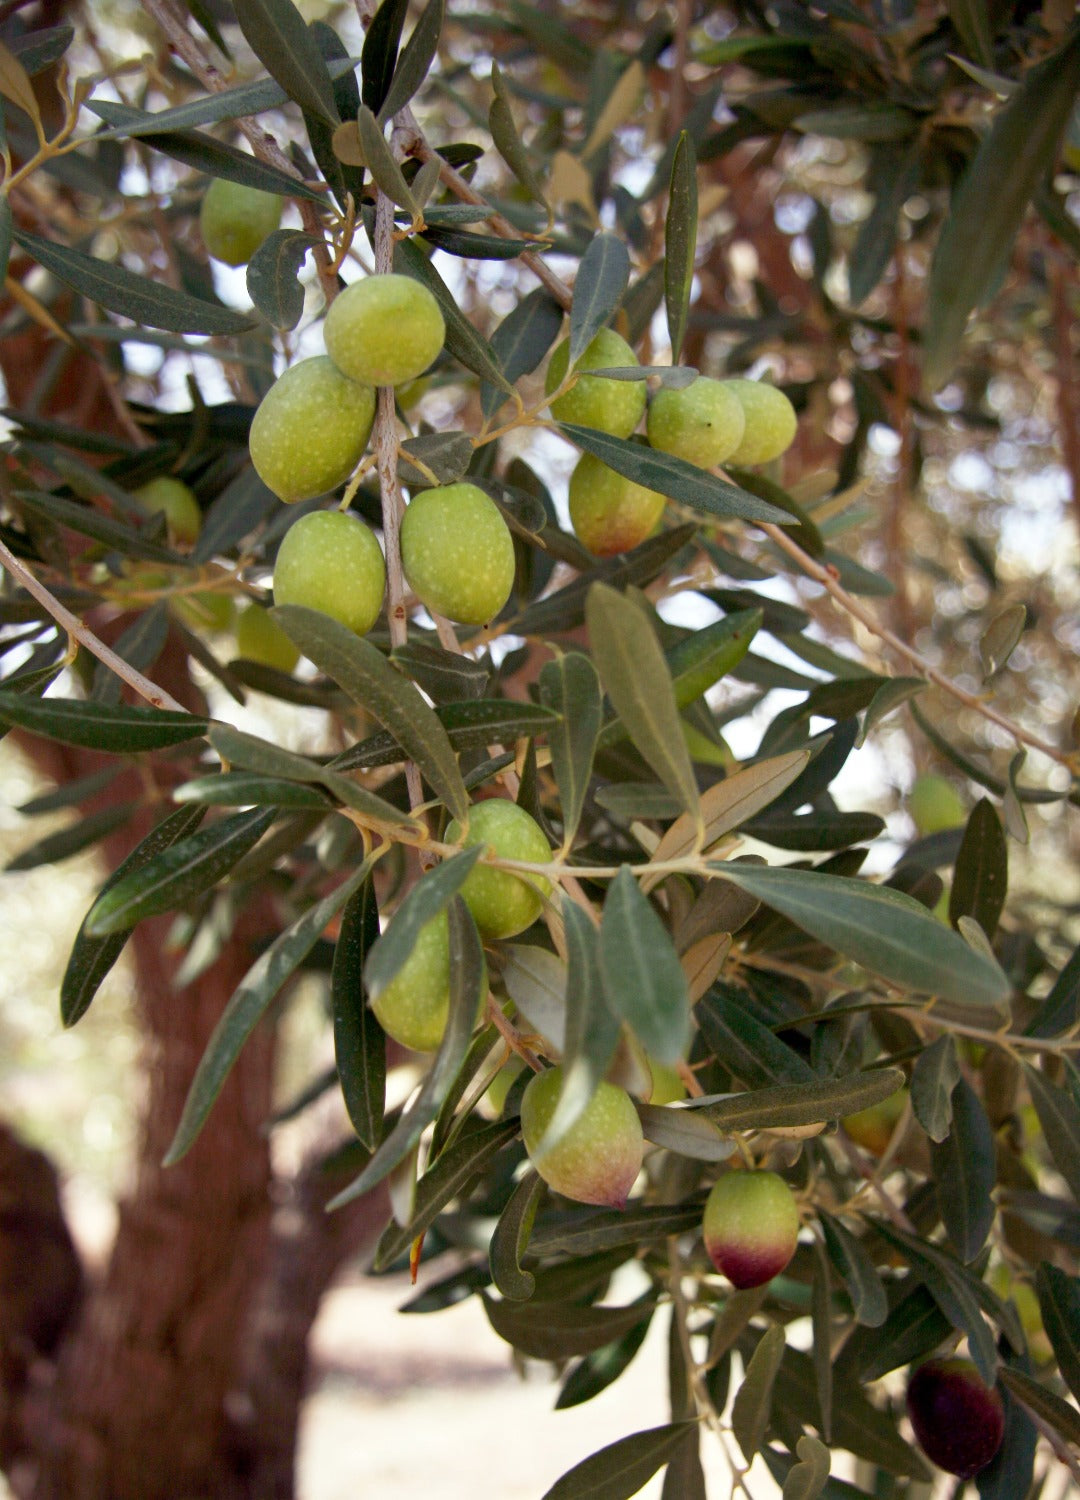 Moresca - Extra Virgin Olive Oil